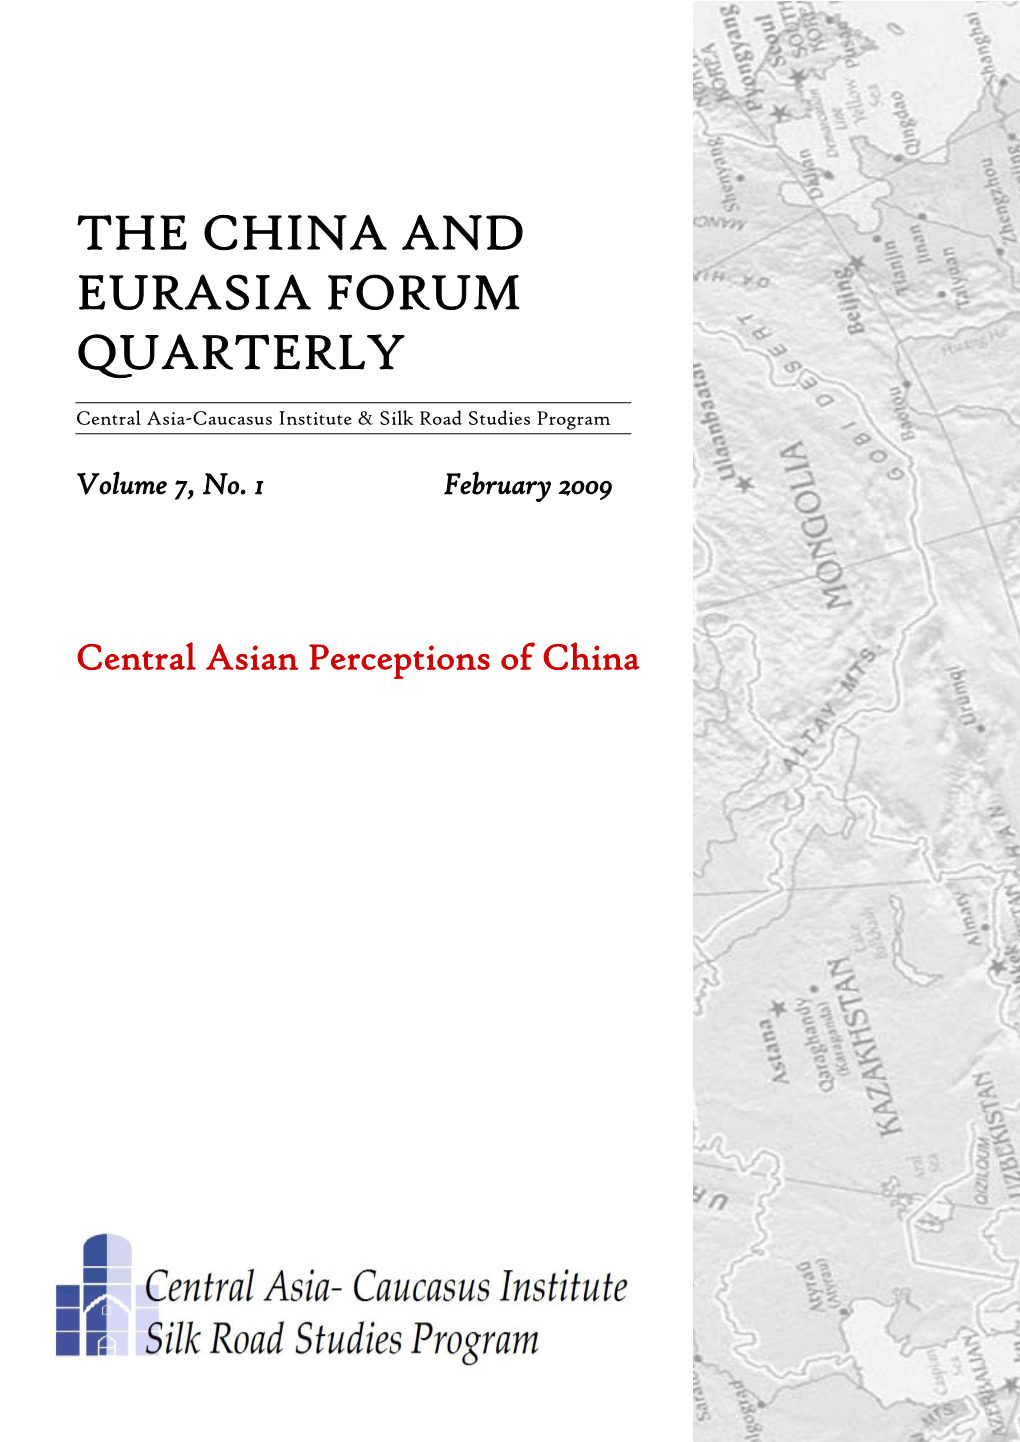 The China and Eurasia Forum Quarterly Vol 7, No 1